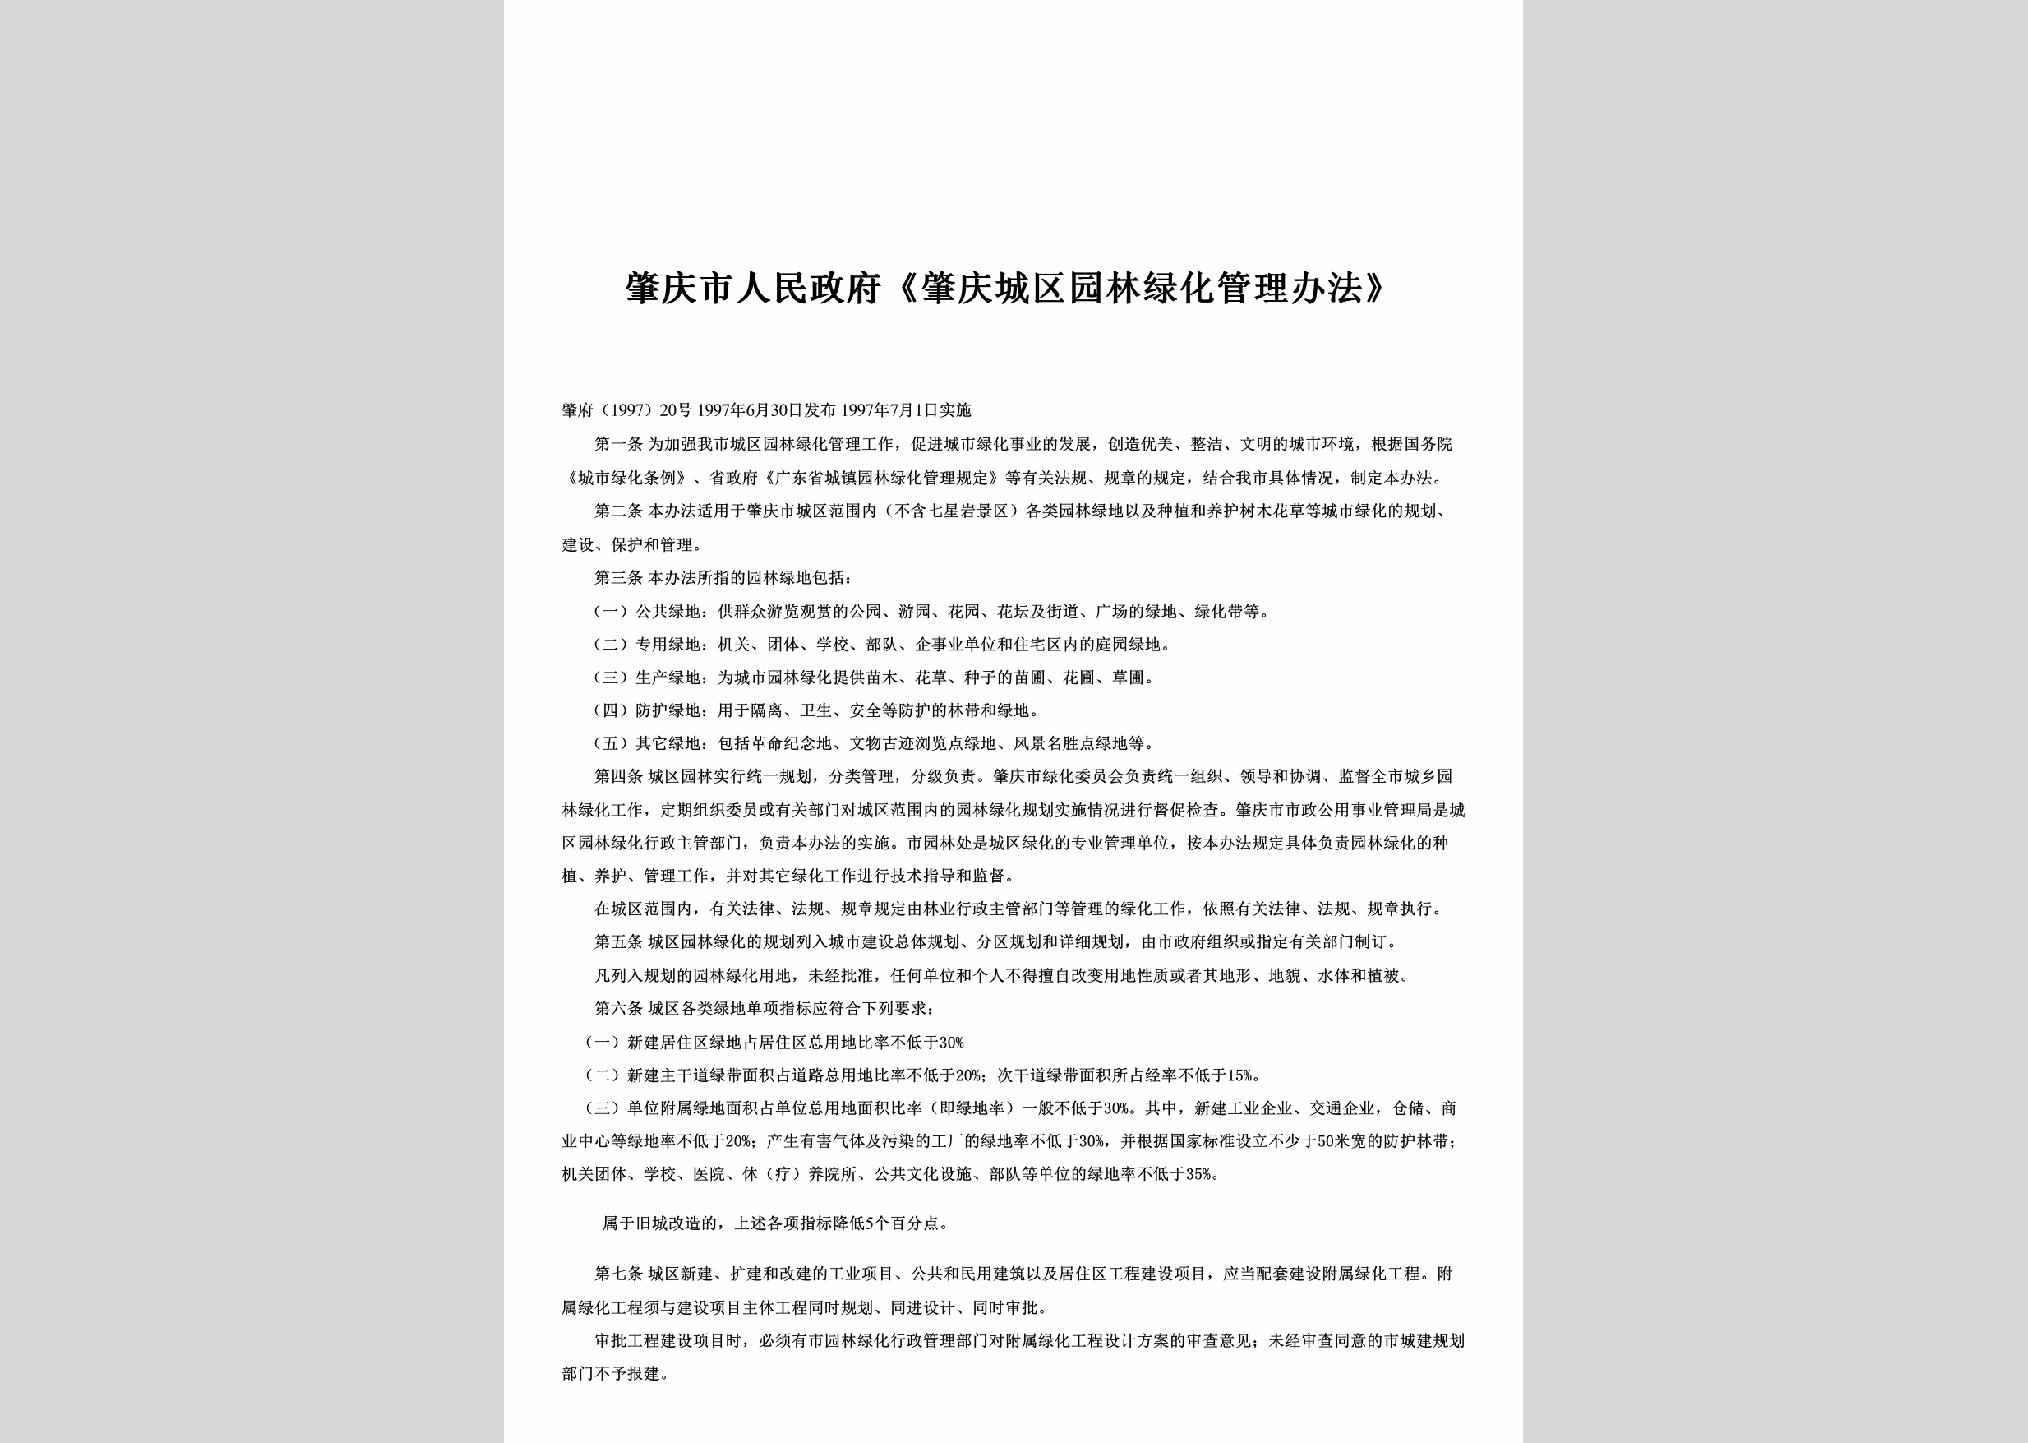 肇府[1997]20号：《肇庆城区园林绿化管理办法》